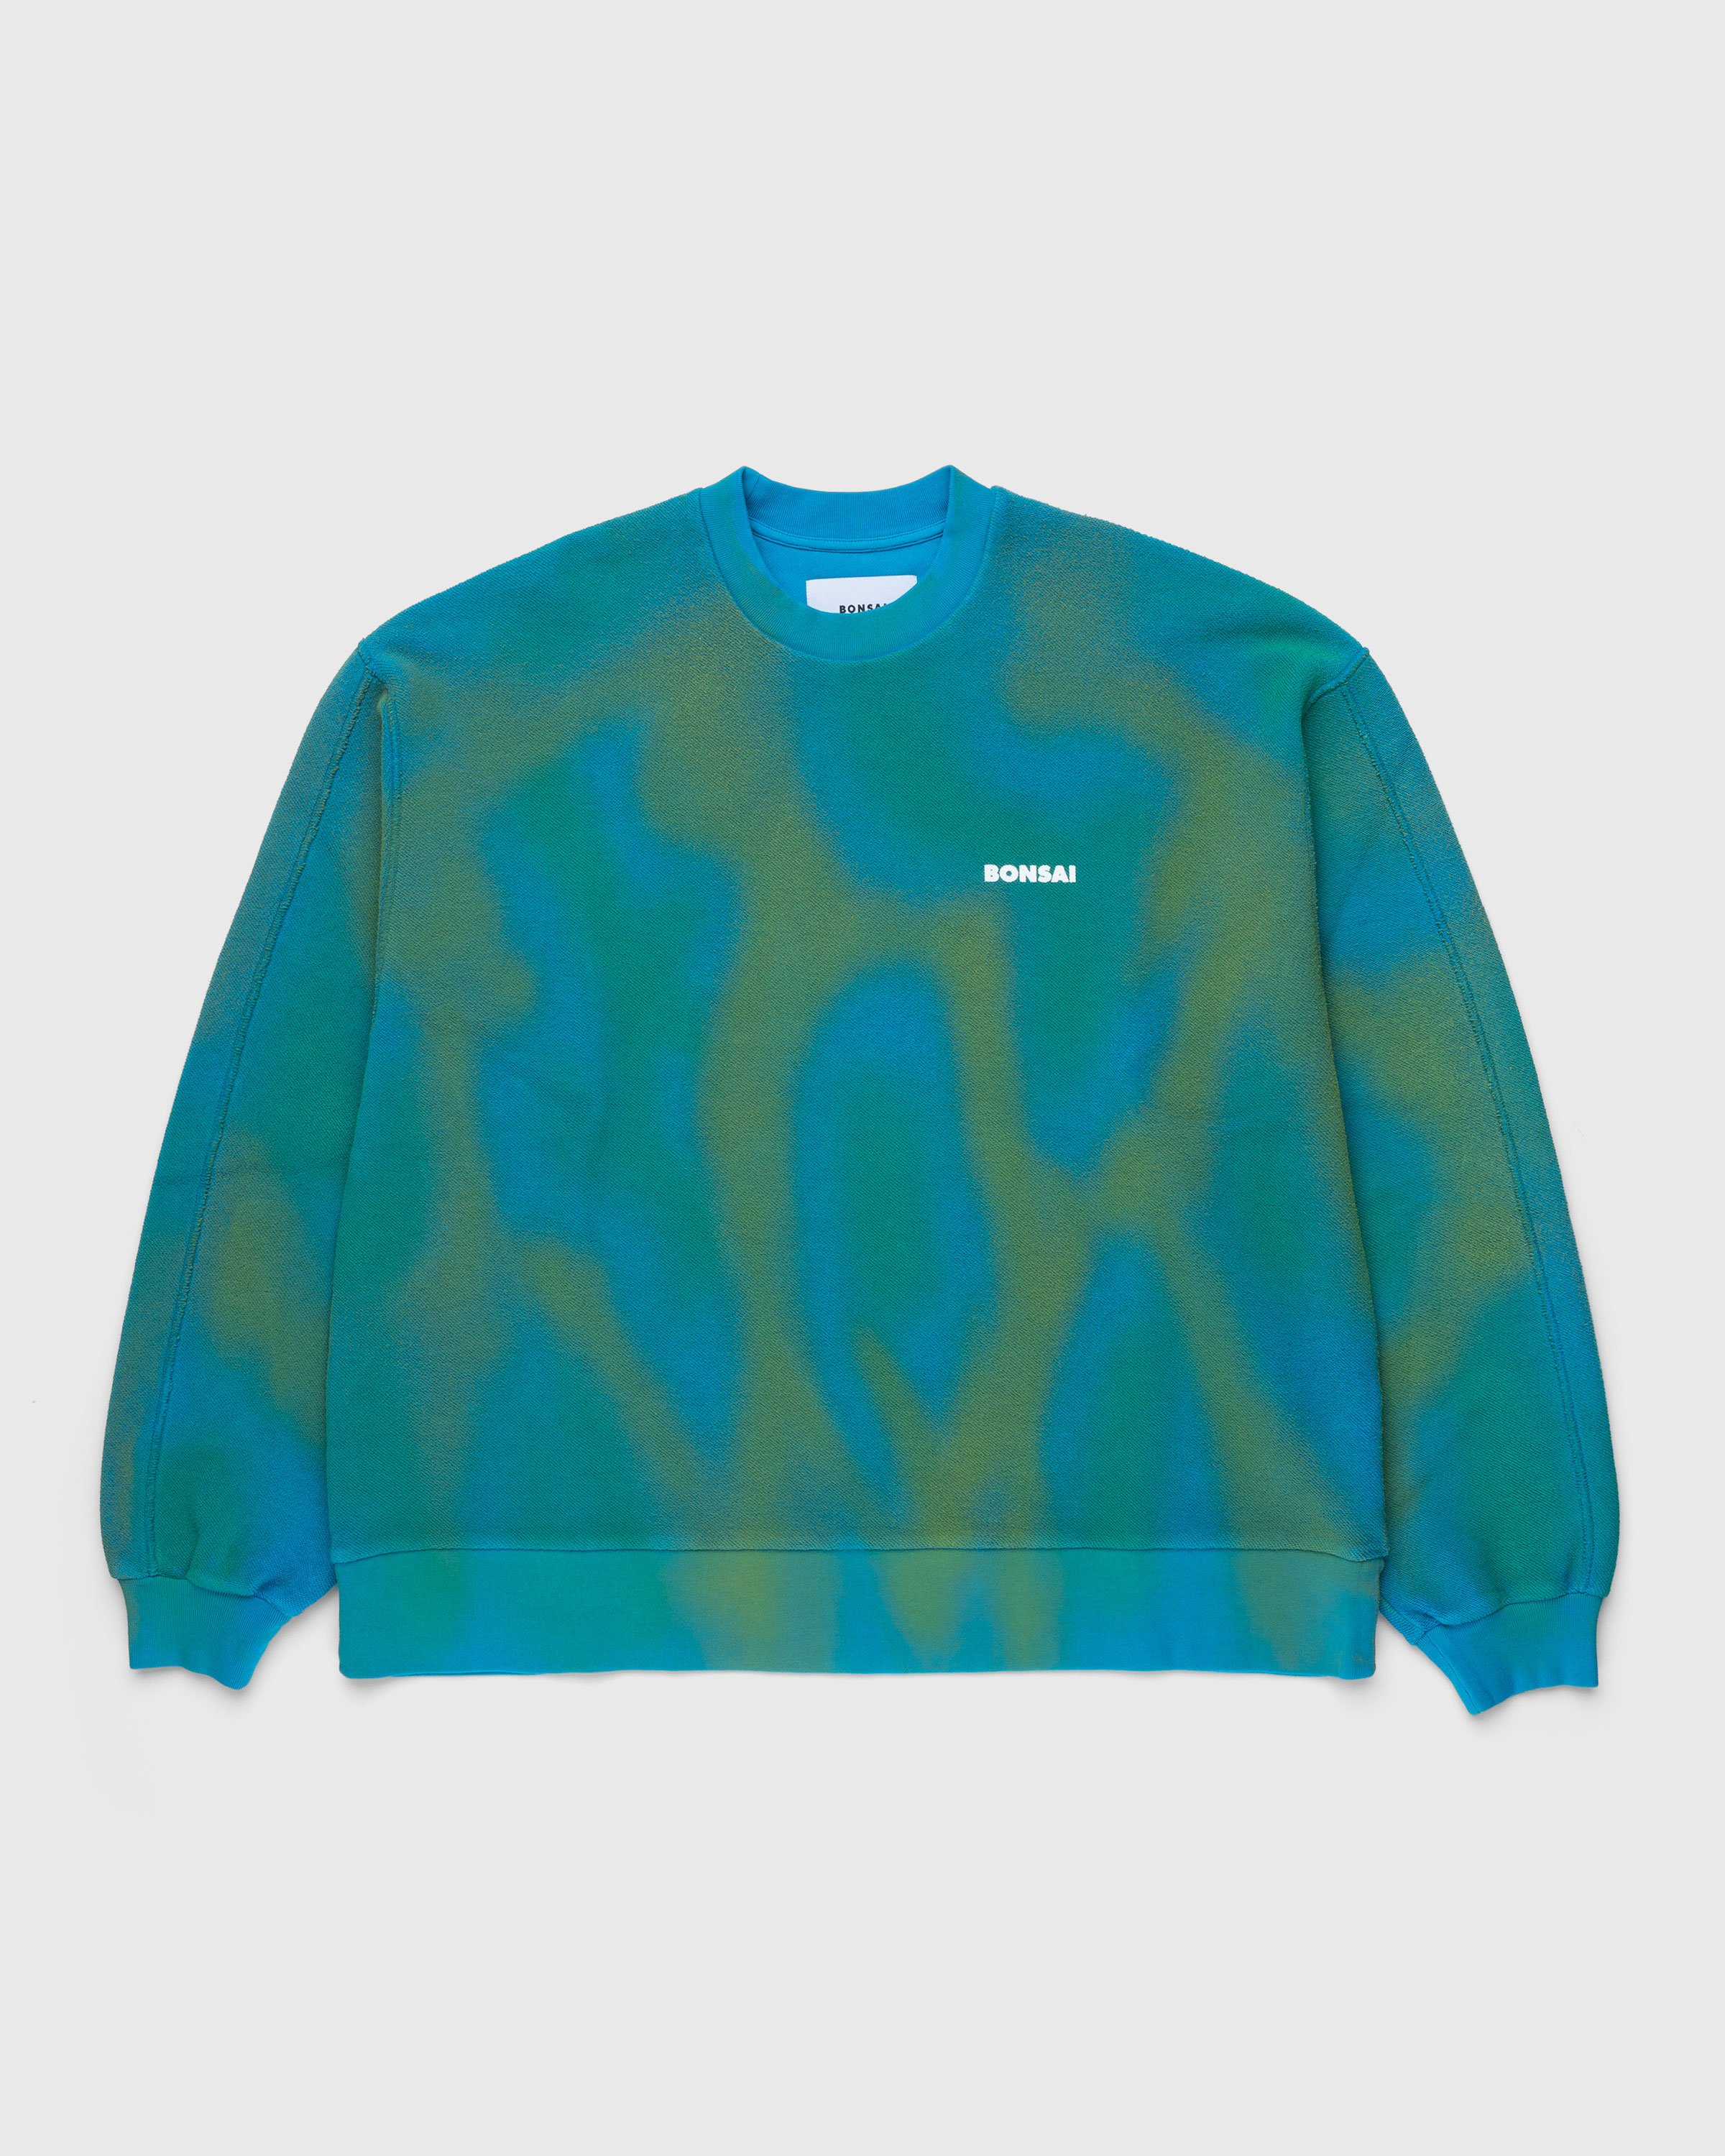 Bonsai - Spray Dyed Crewneck Sweatshirt Blue - Clothing - Blue - Image 1